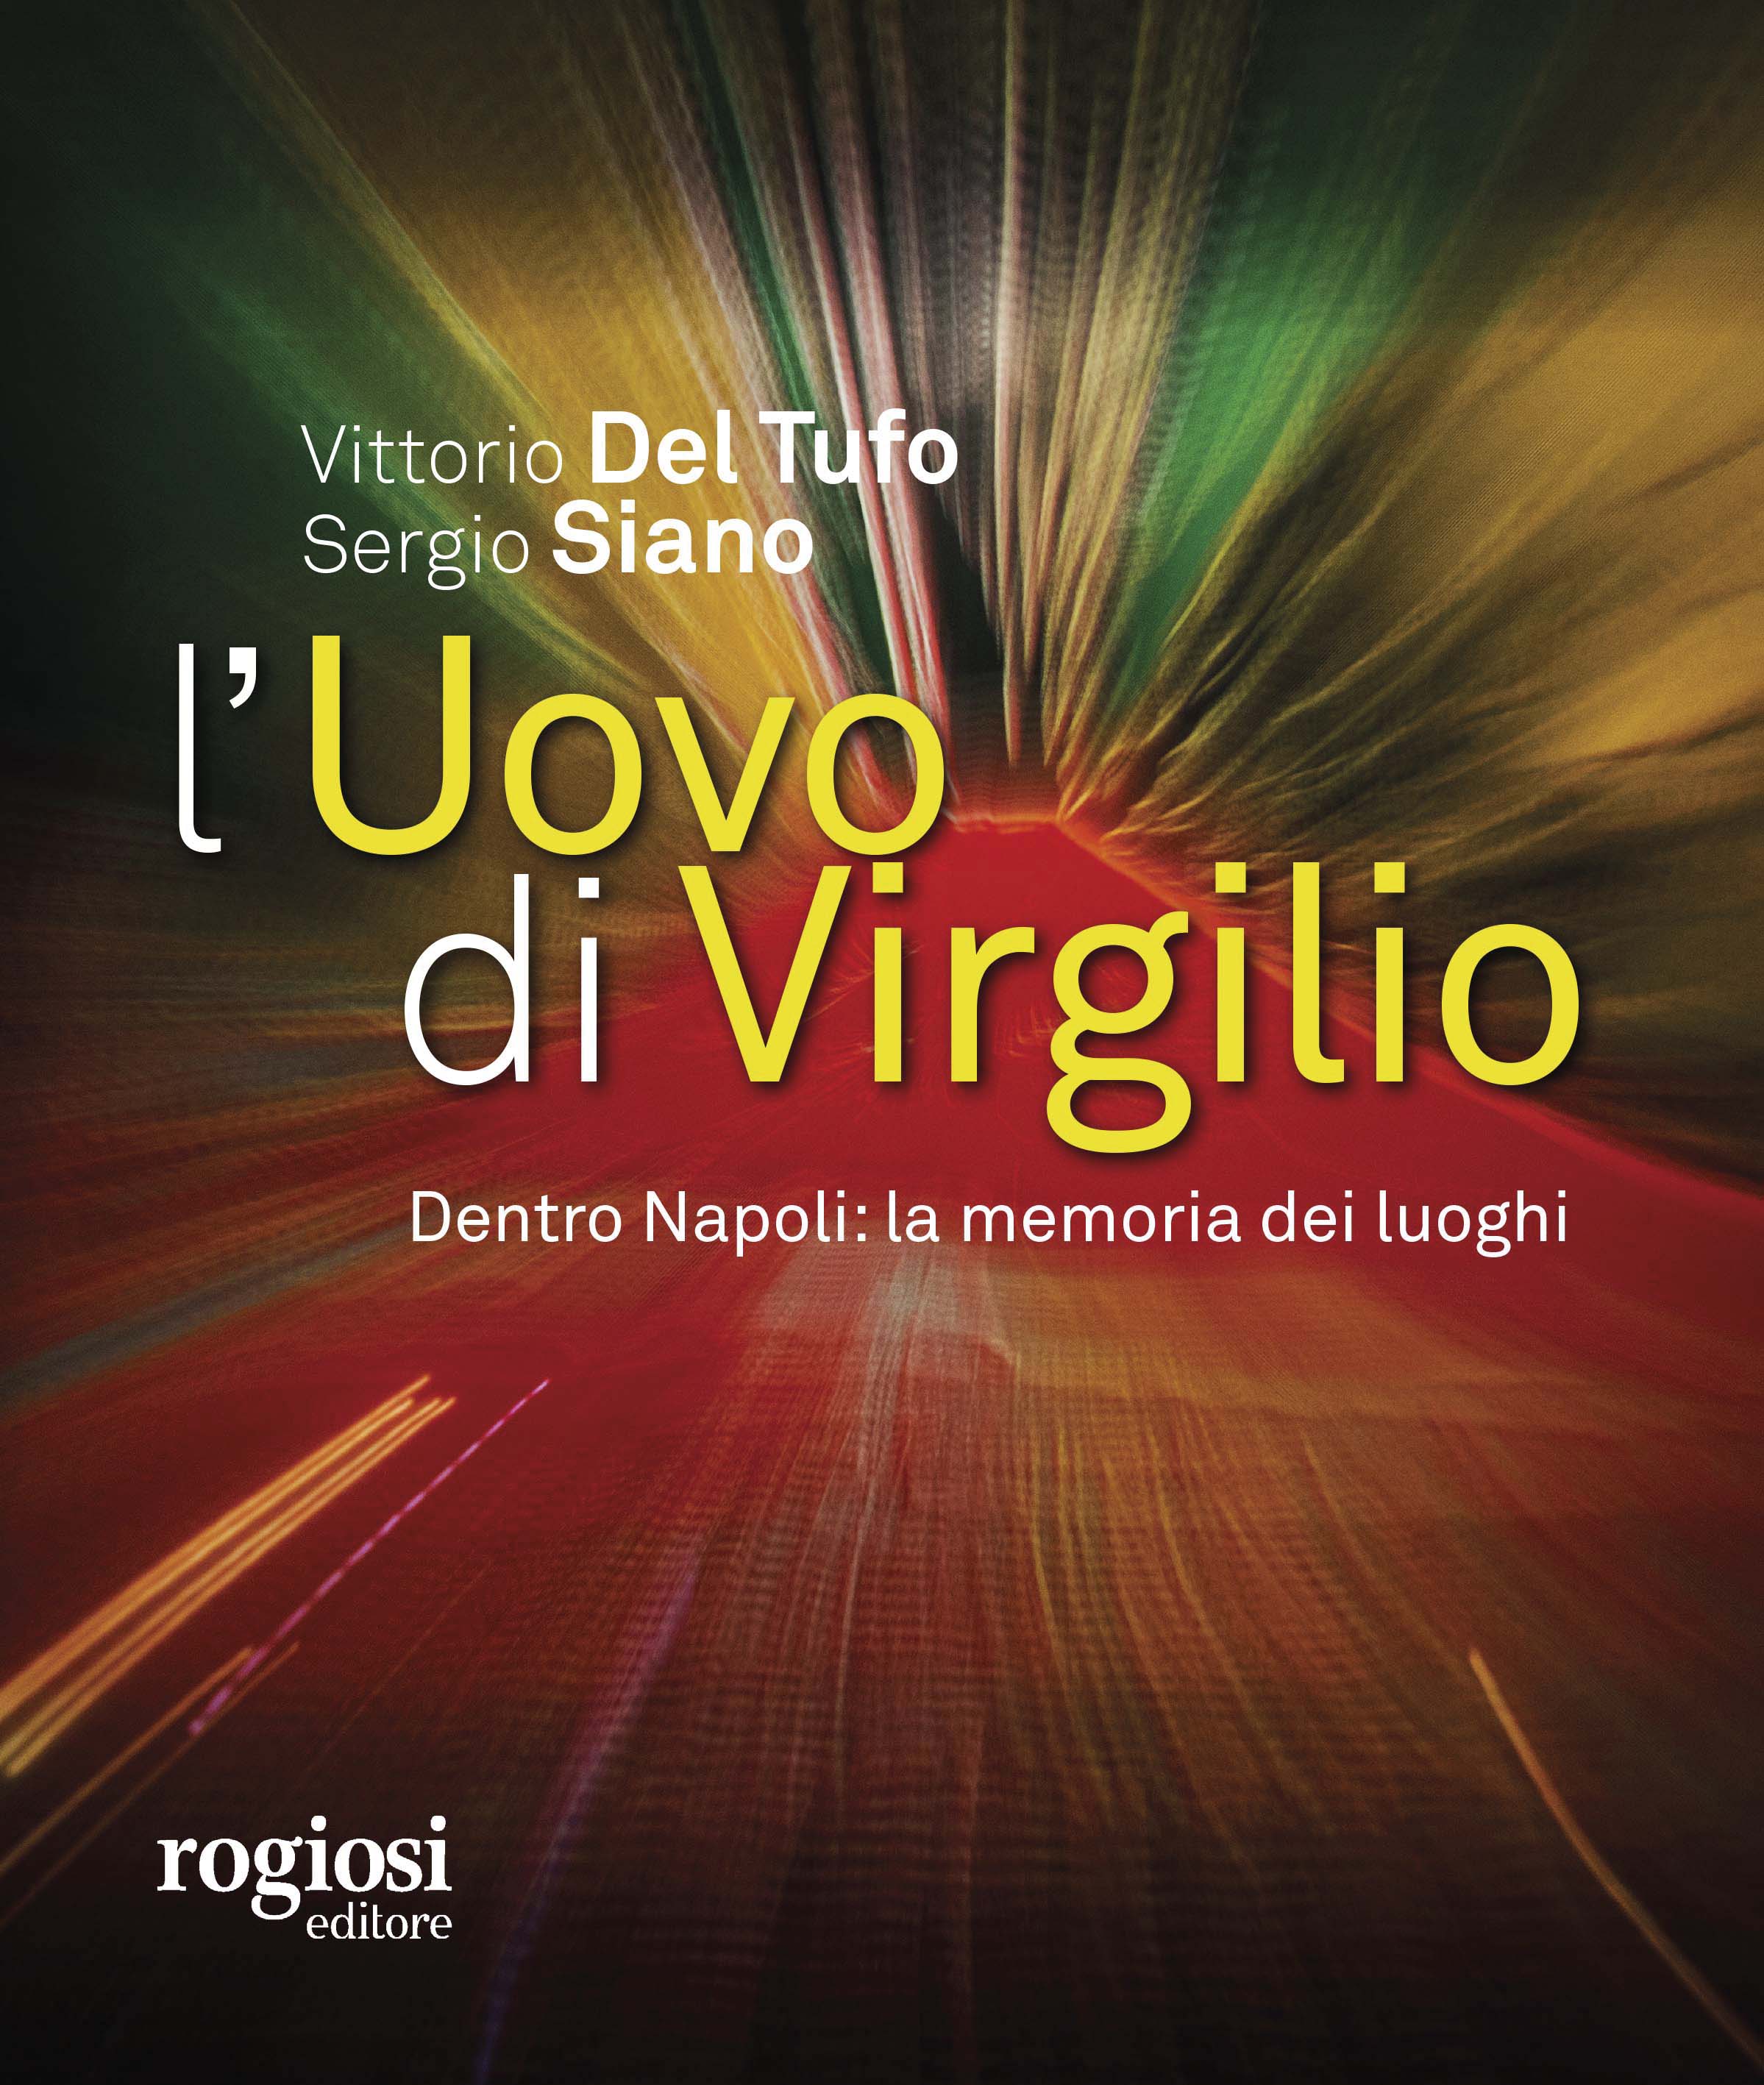 SPETT 29 novembre 2019 La copertina del libro "L'Uovo di Virgilio" di Vittorio Del Tufo e Sergio Siano.
newfotosud